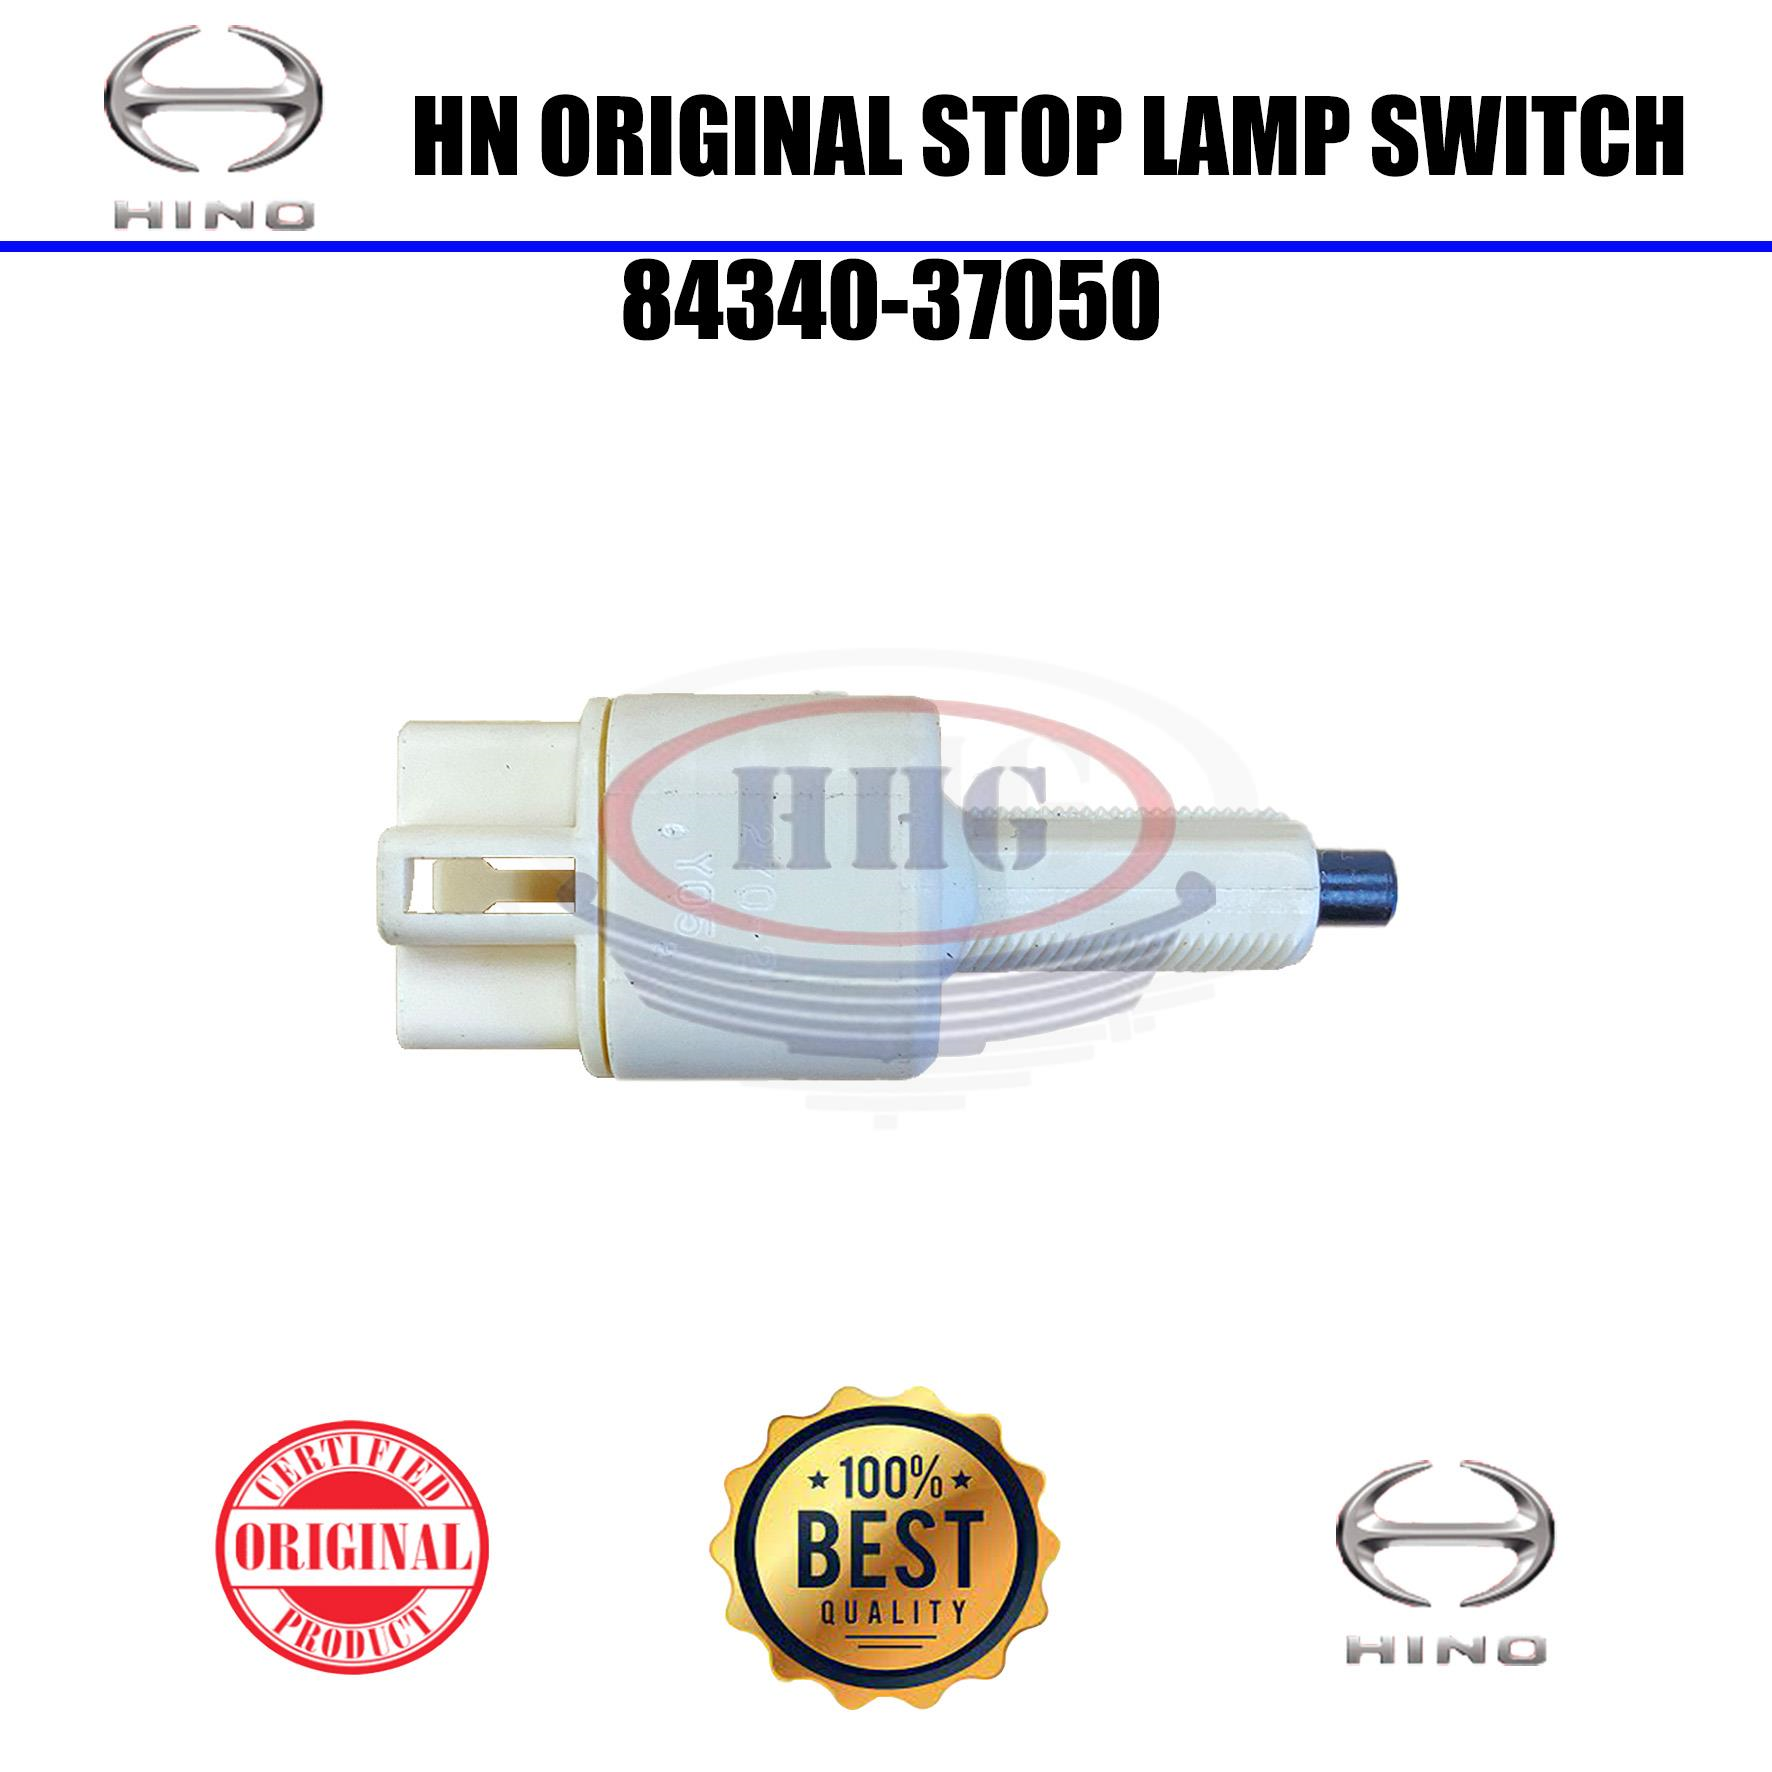 Hino Original Dutro XZU720 Stop Lamp Switch(84340-37050)